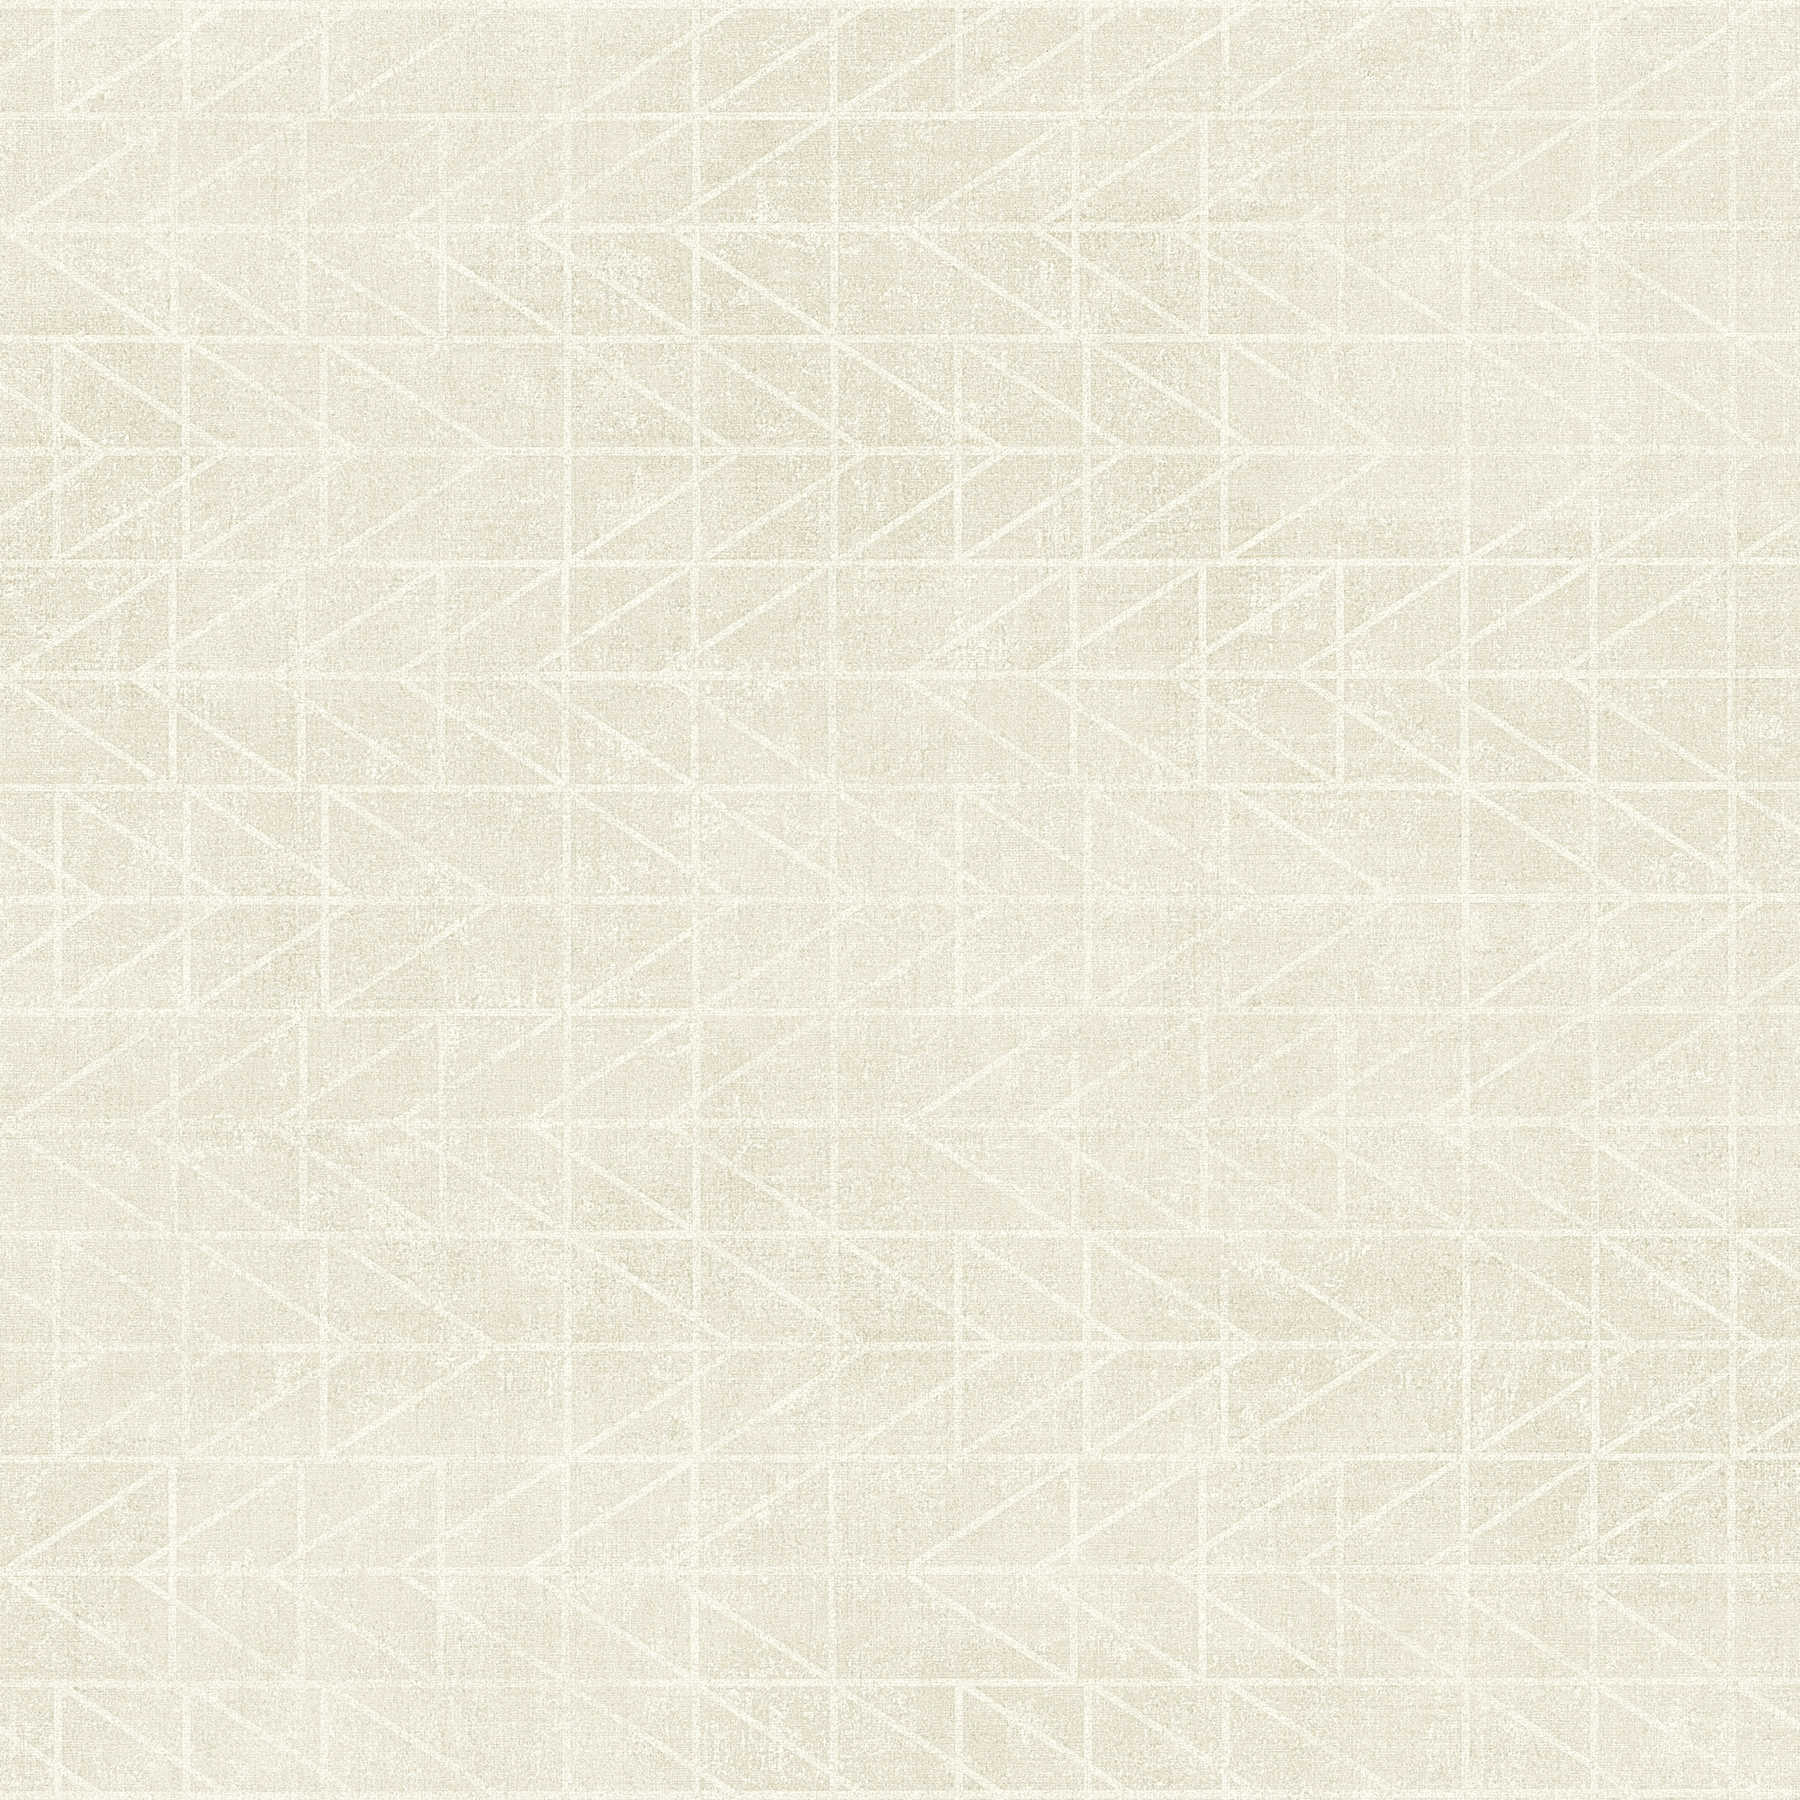         Geometric ethnic wallpaper indigenous Navajo design - beige
    